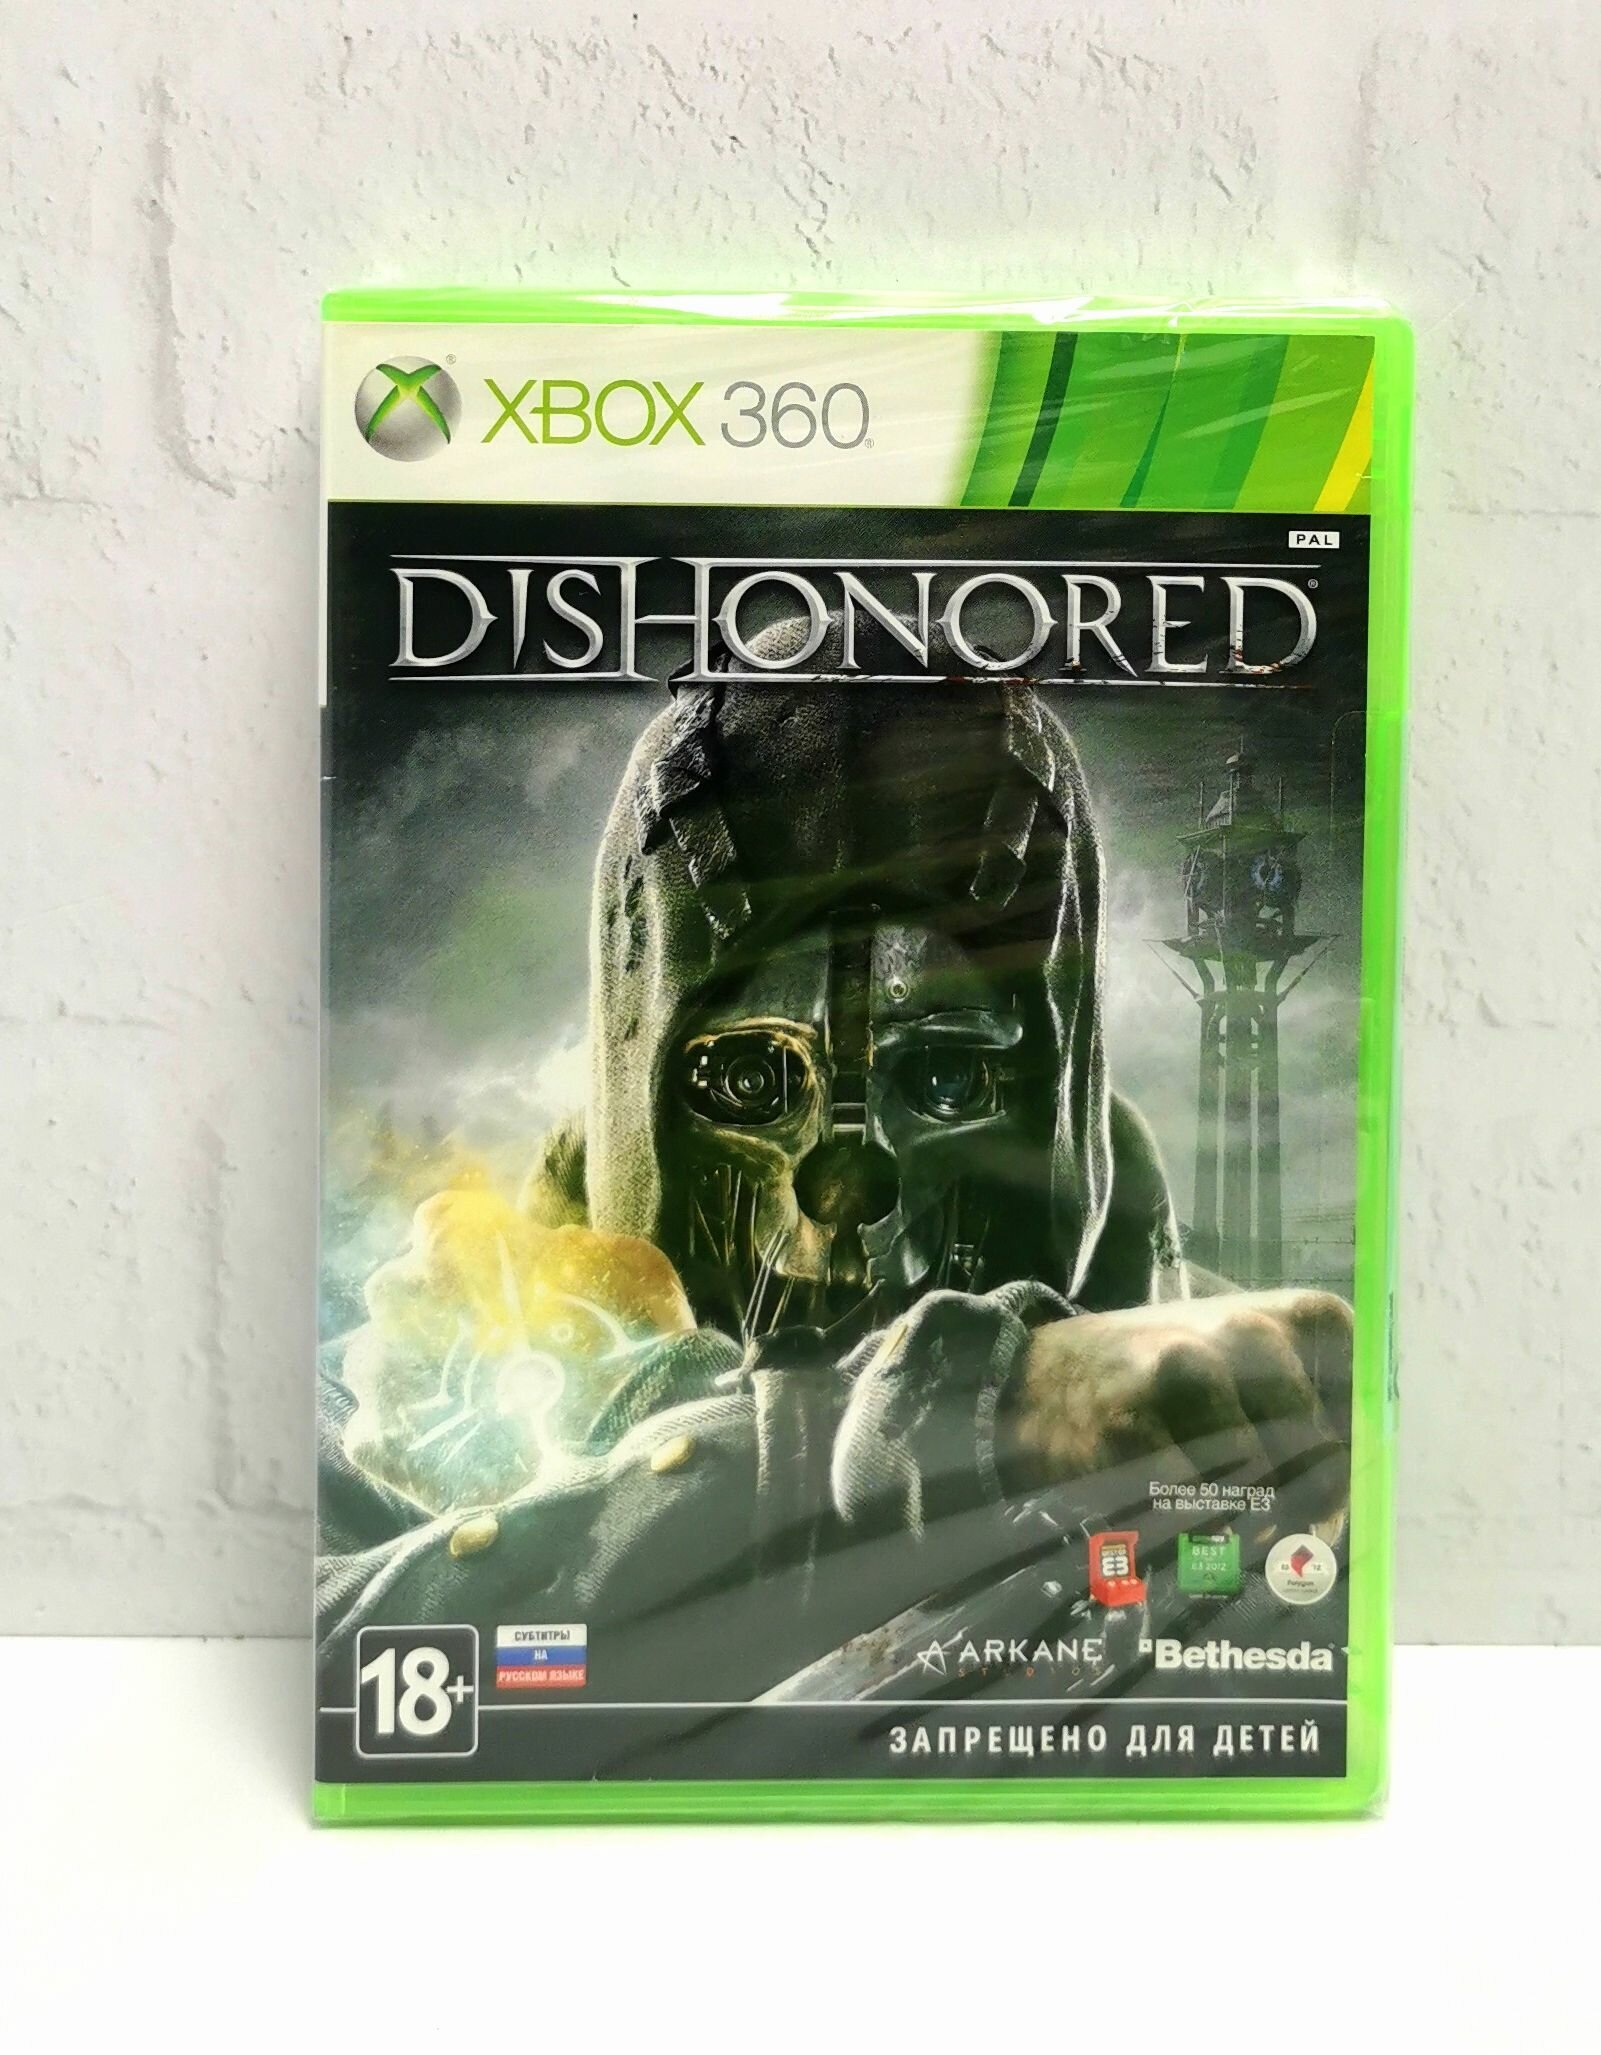 Dishonored Русские субтитры Видеоигра на диске Xbox 360